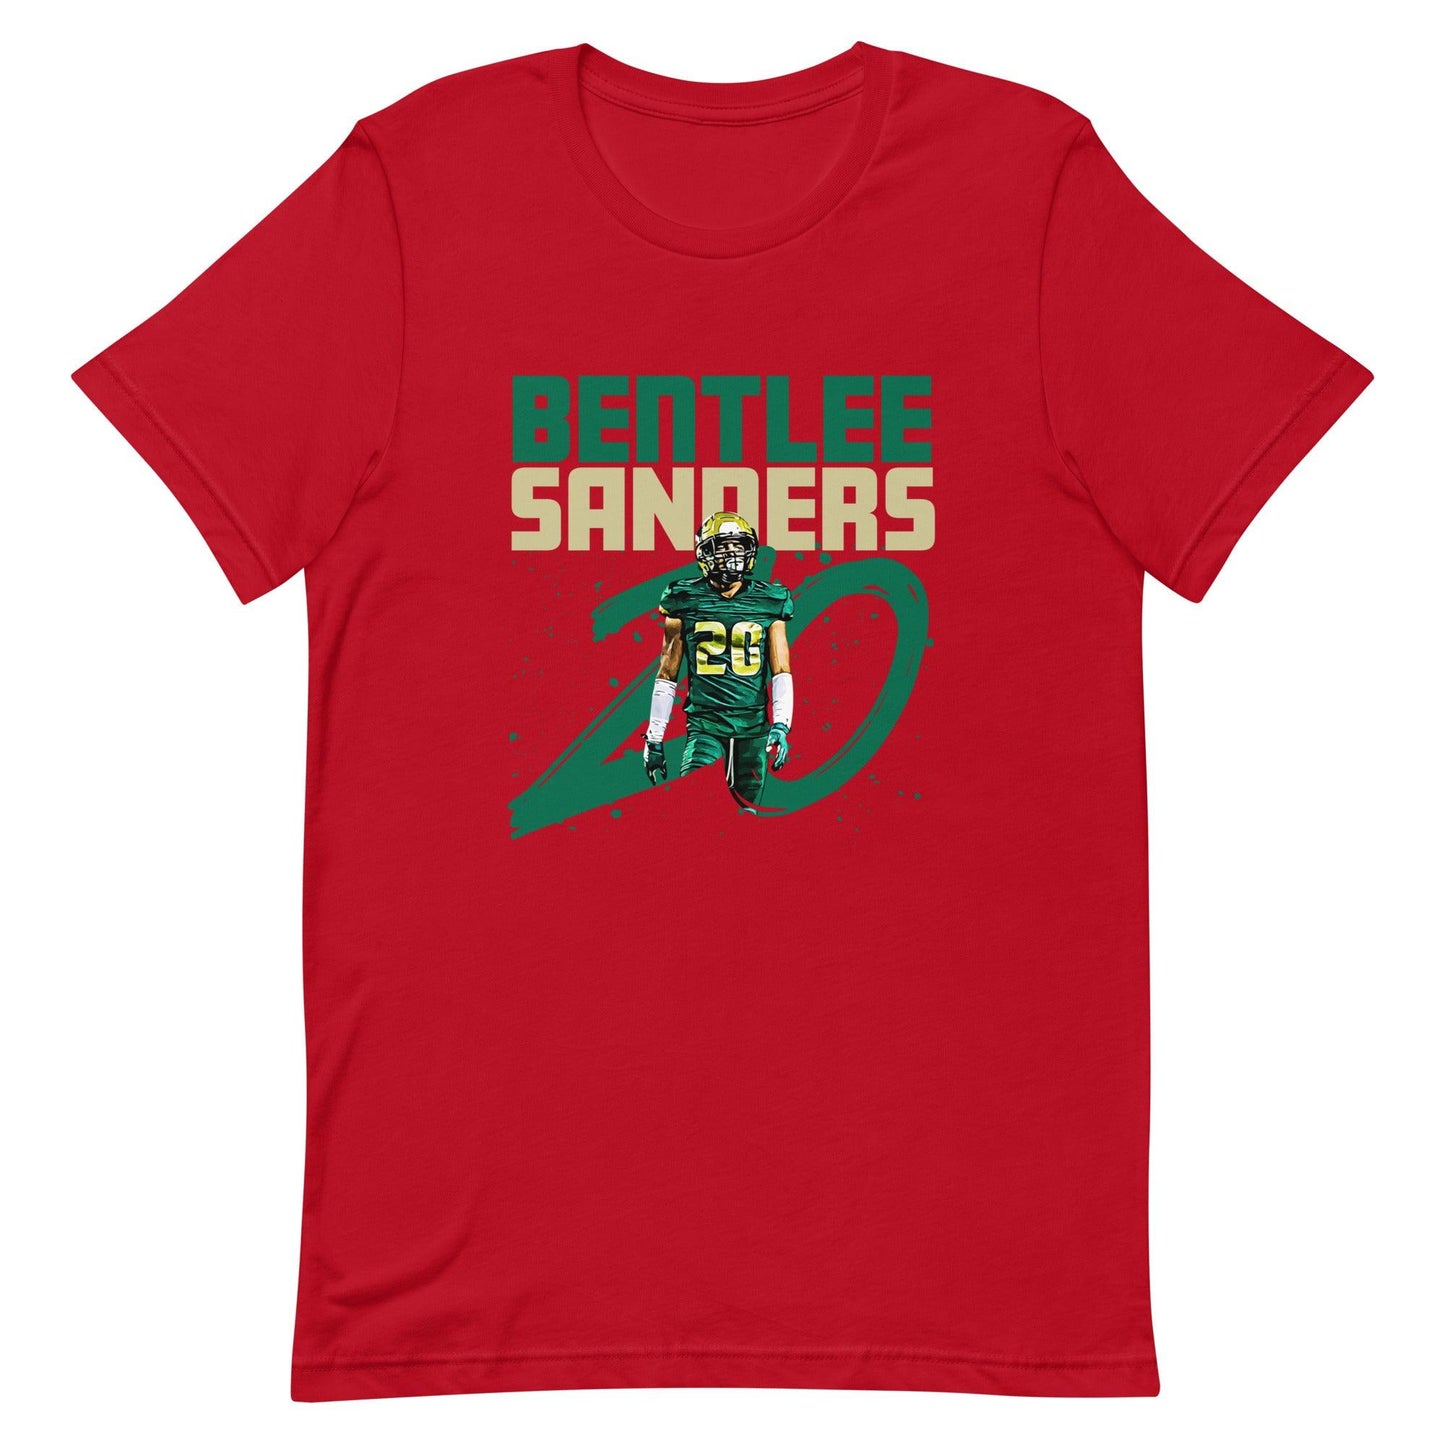 Bentlee Sanders "Gameday" t-shirt - Fan Arch